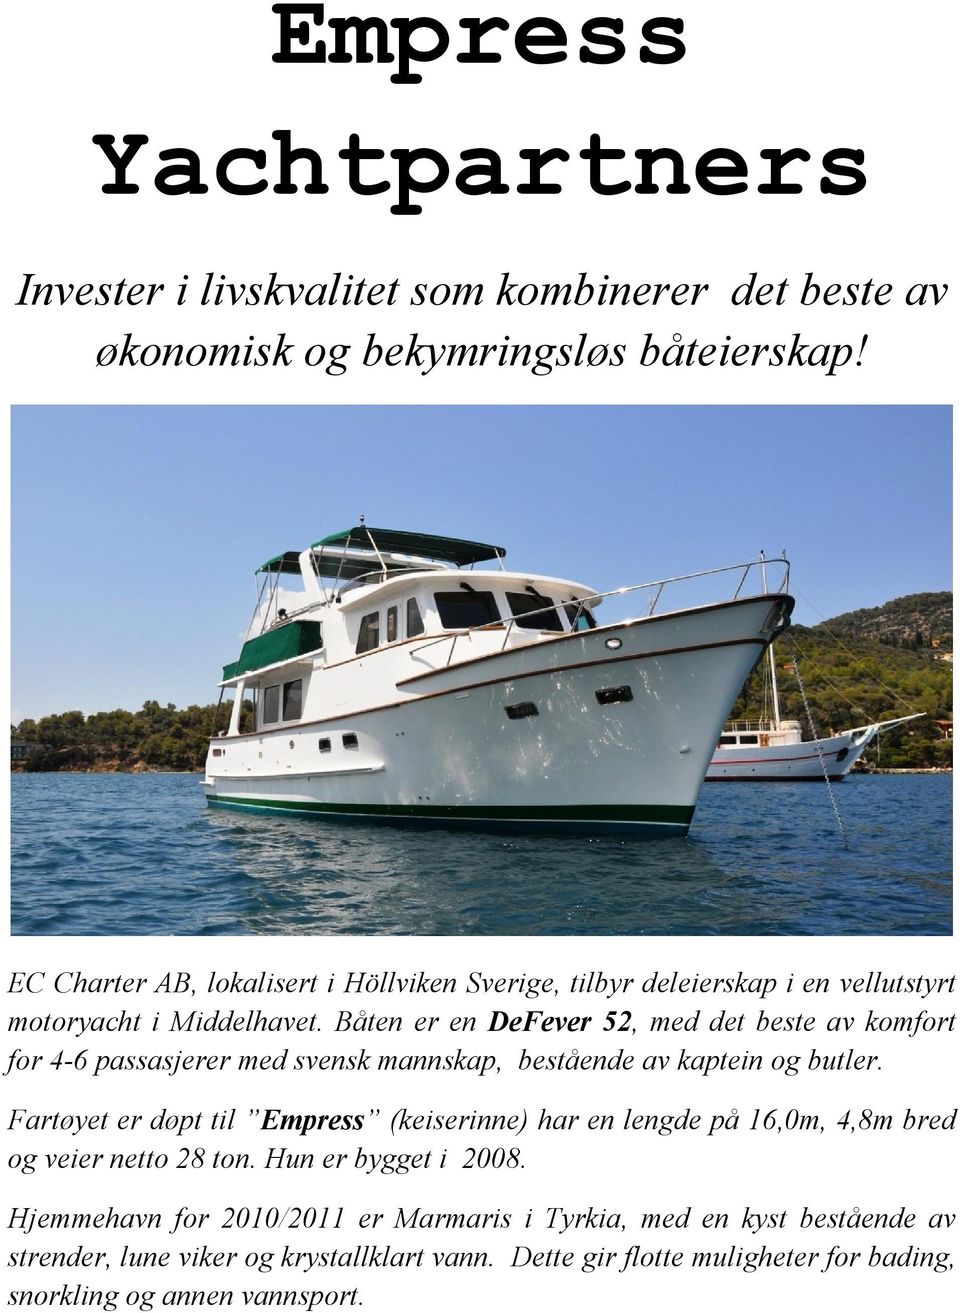 Båten er en DeFever 52, med det beste av komfort for 4-6 passasjerer med svensk mannskap, bestående av kaptein og butler.